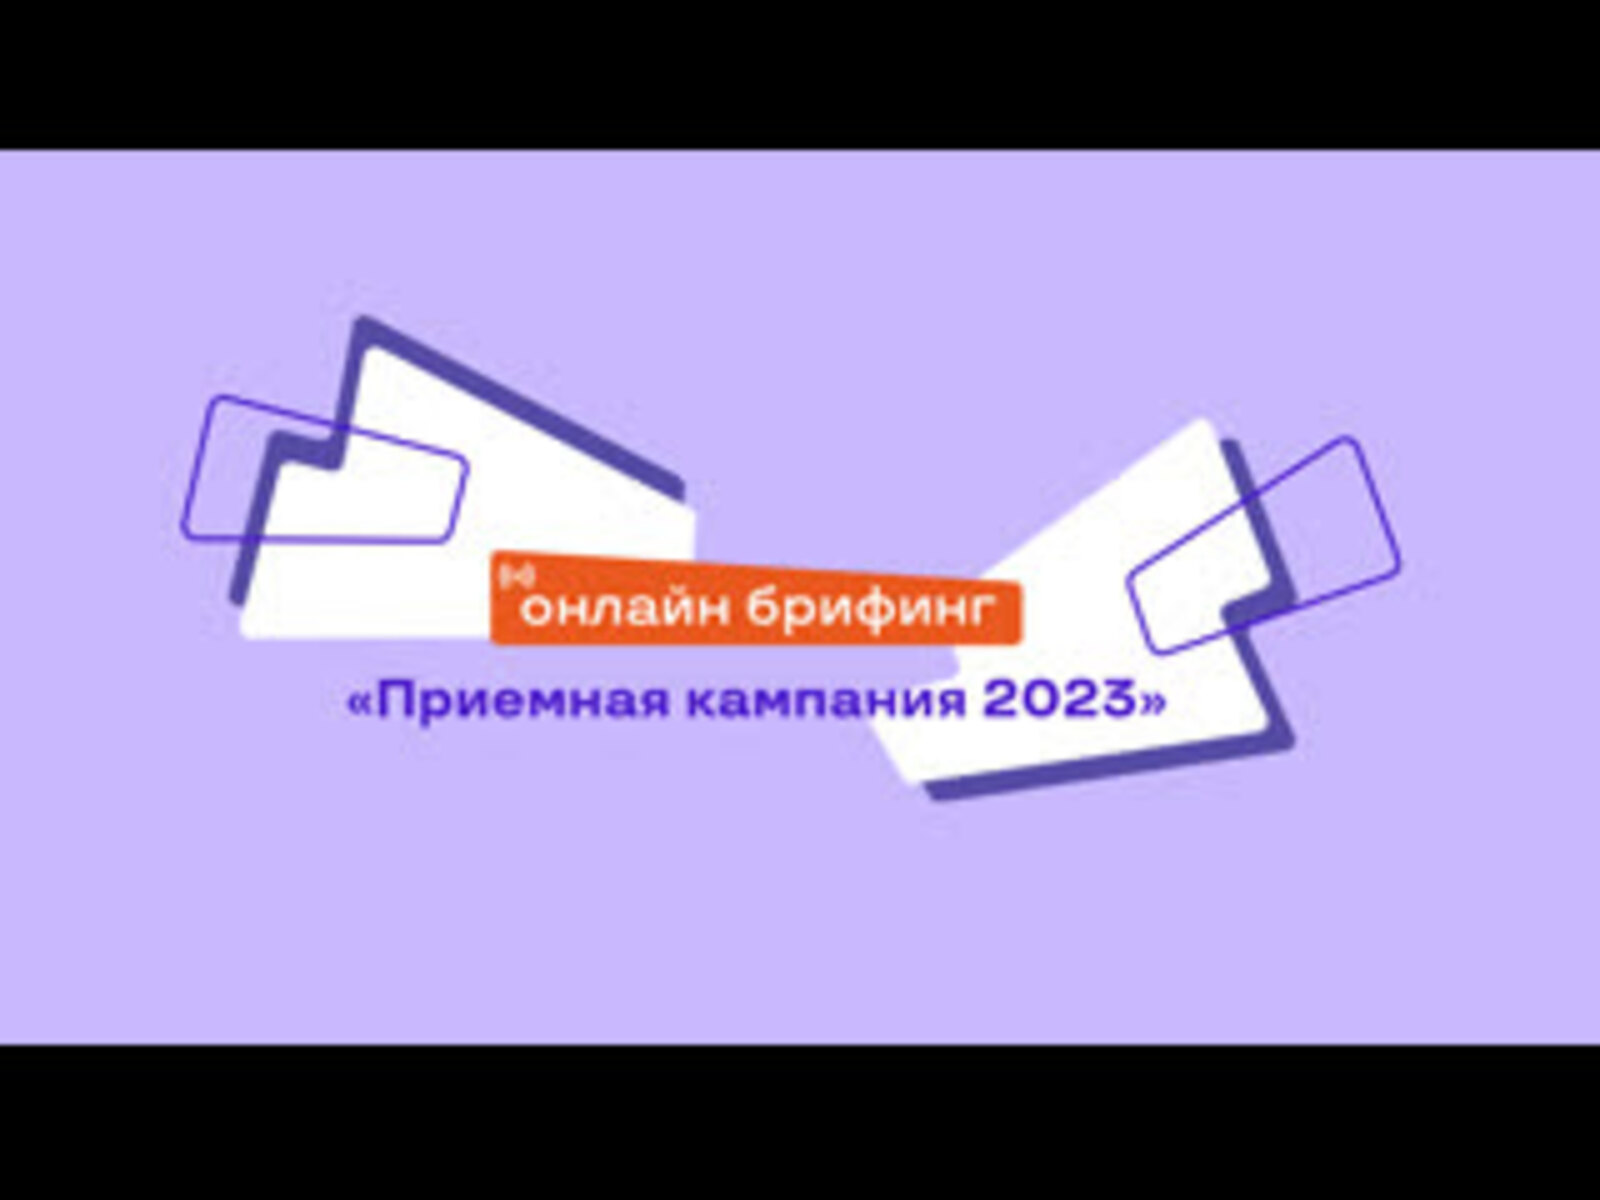 Приемная кампания-2023 в Башкортостане: брифинг в прямом эфире.